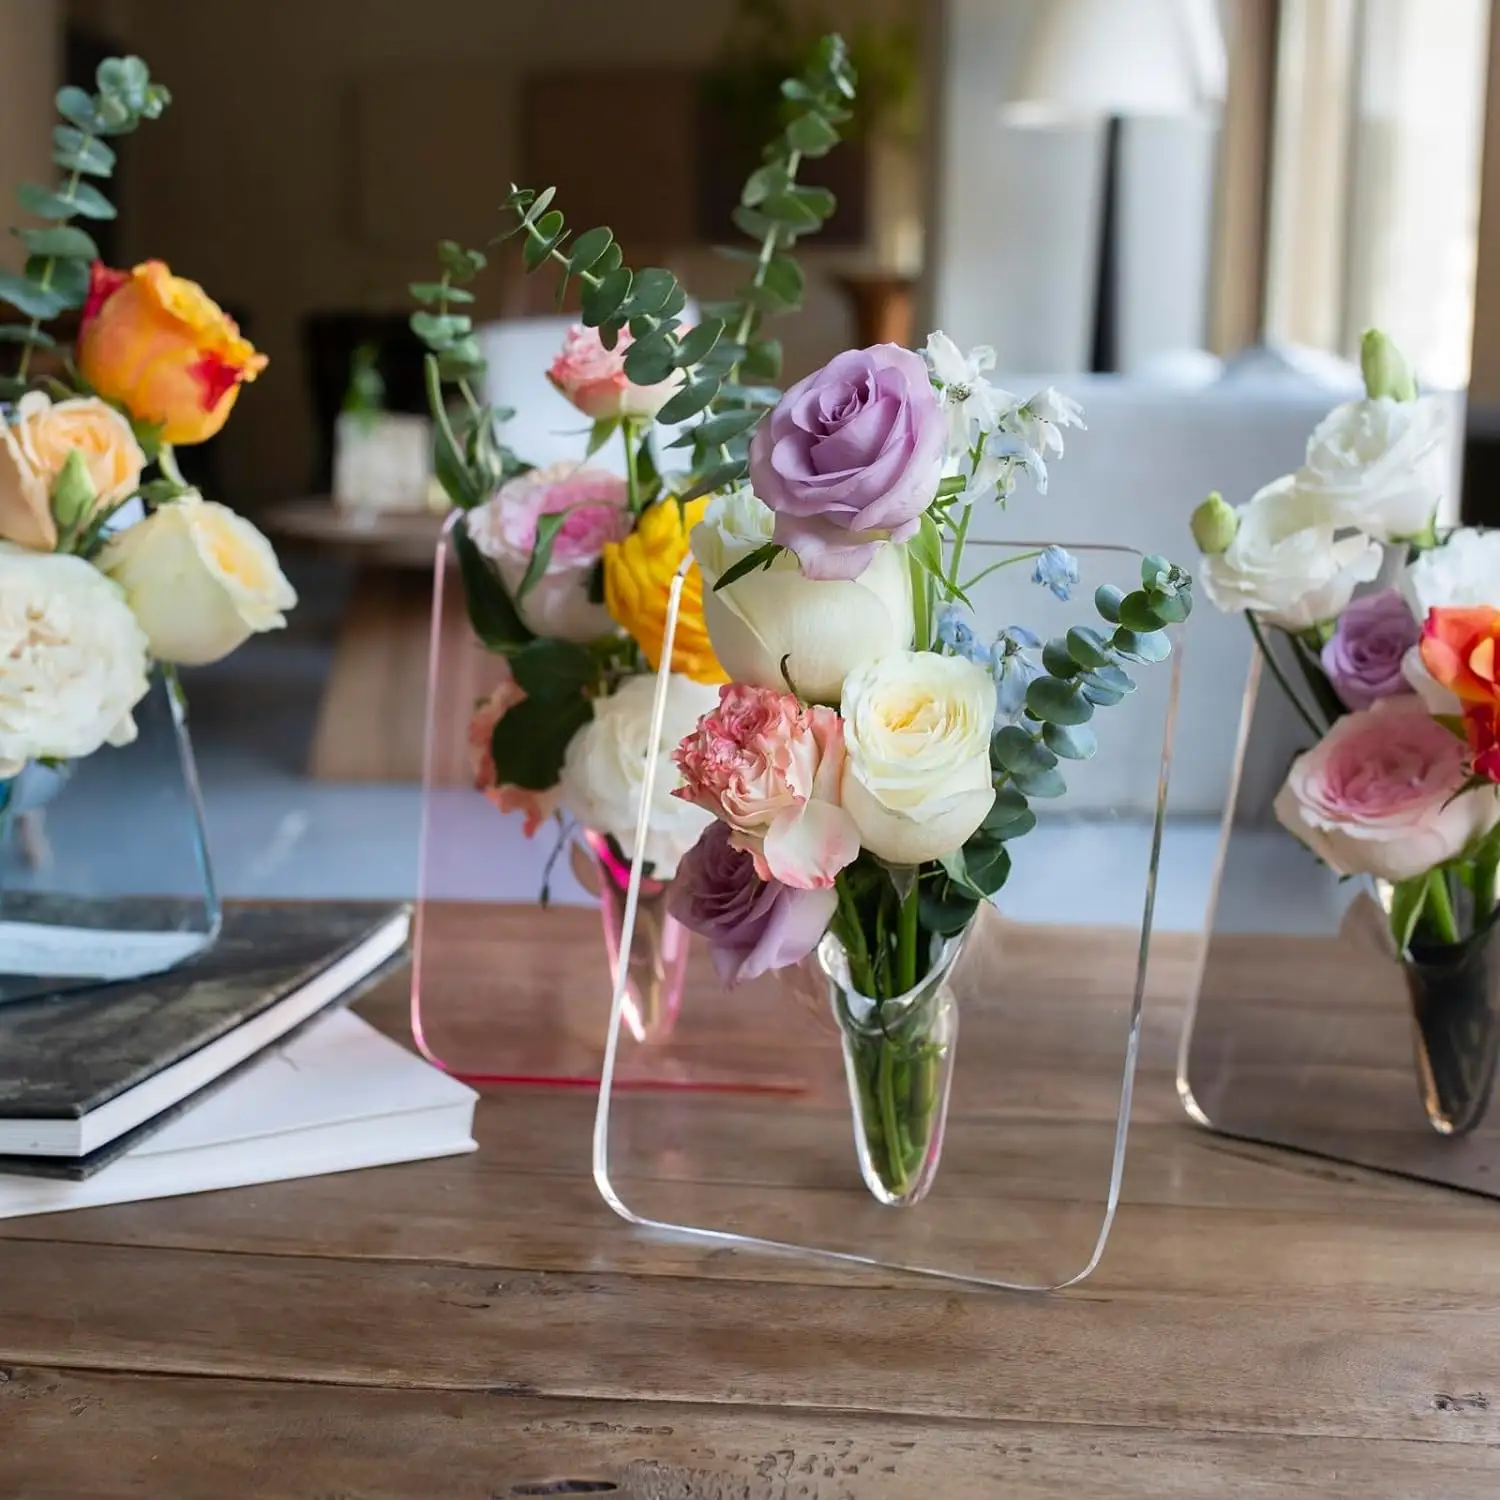 स्पष्ट ऐक्रेलिक फोटो फ्रेम आकार का फूल फूलदान, घर के कमरे, कार्यालय बुकशेल्फ़, शादी की मेज की सजावट के लिए सौंदर्यपूर्ण छोटा ऐक्रेलिक फूलदान